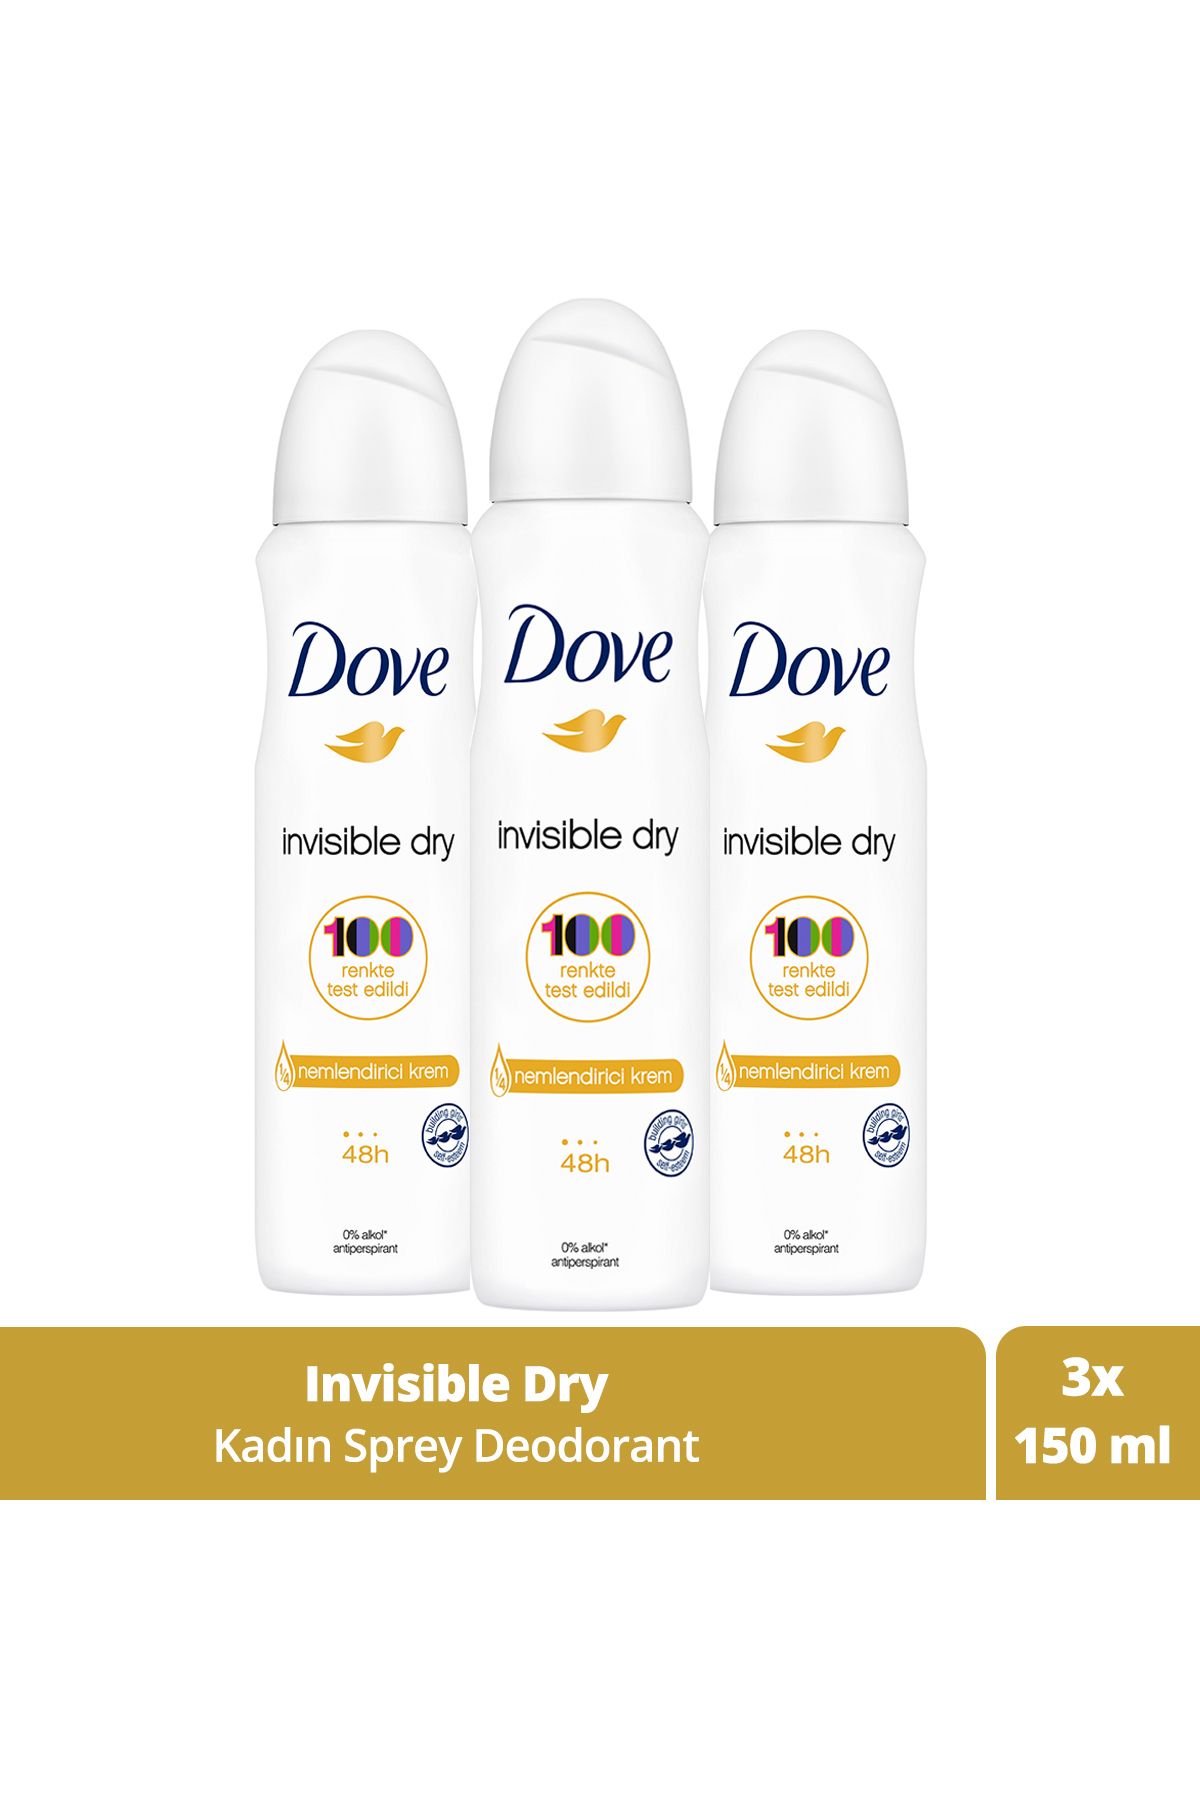 Dove Kadın Sprey Deodorant Invisible Dry 1/4 Nemlendirici Krem Etkili 150 ml X3 Adet